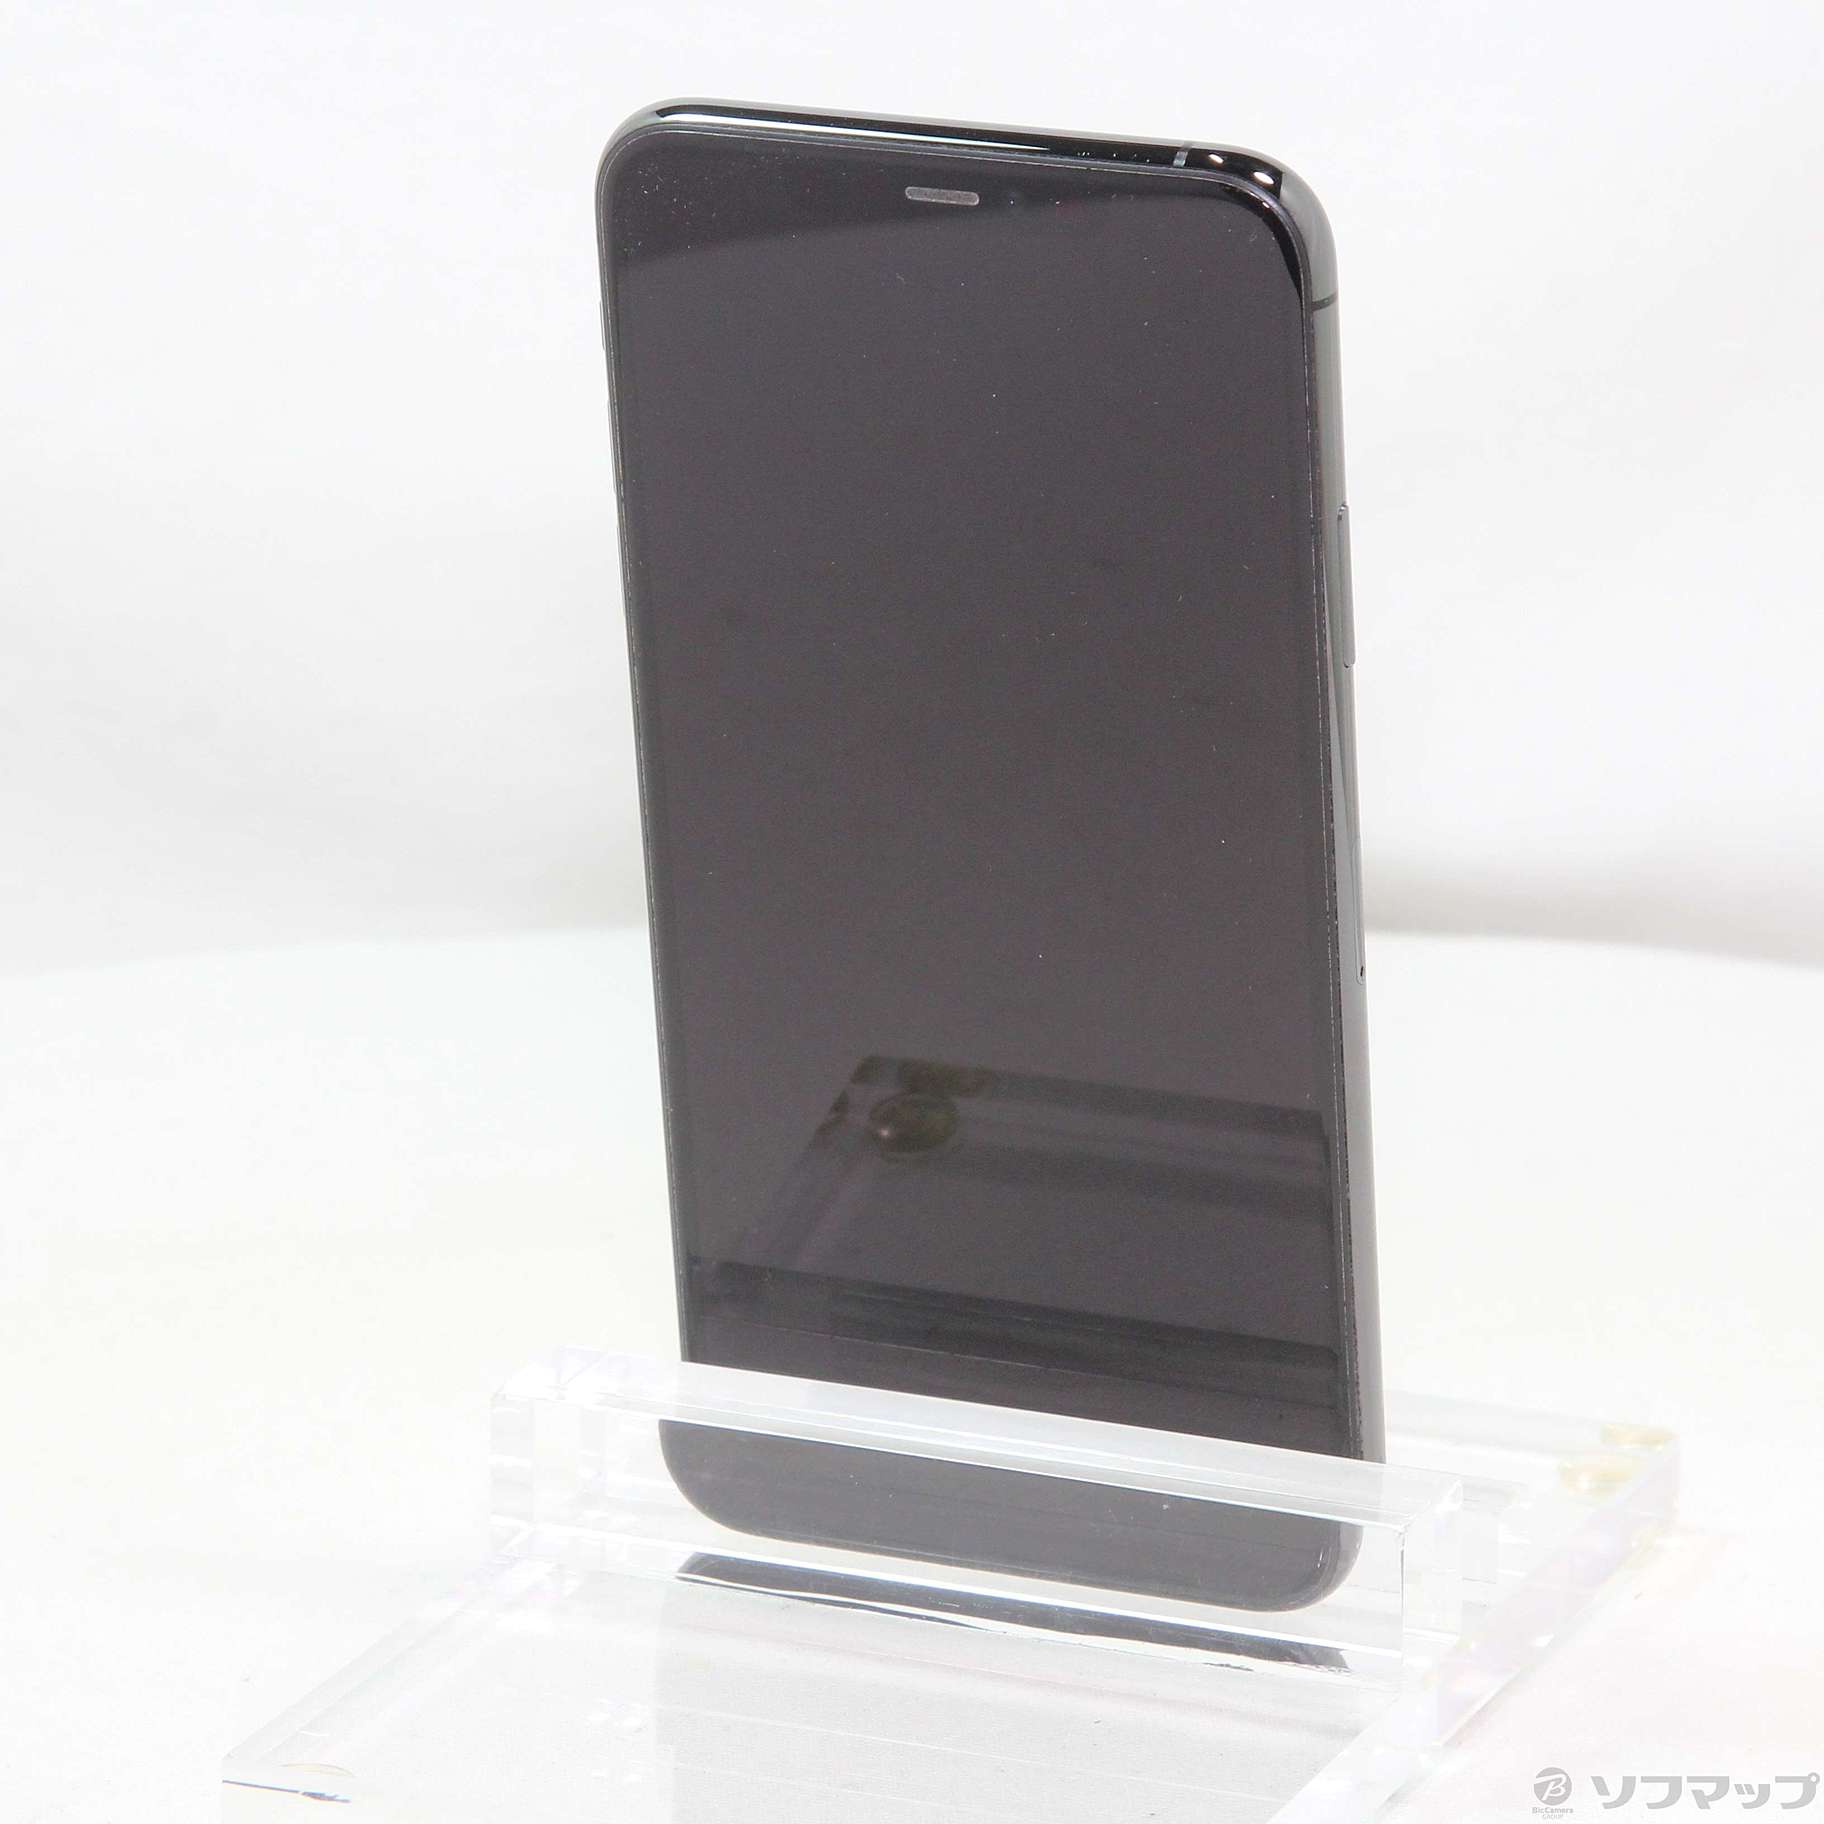 セール特価 iPhone - 俺のiPhone11Promax 256GB スペースグレー Wi-Fi 